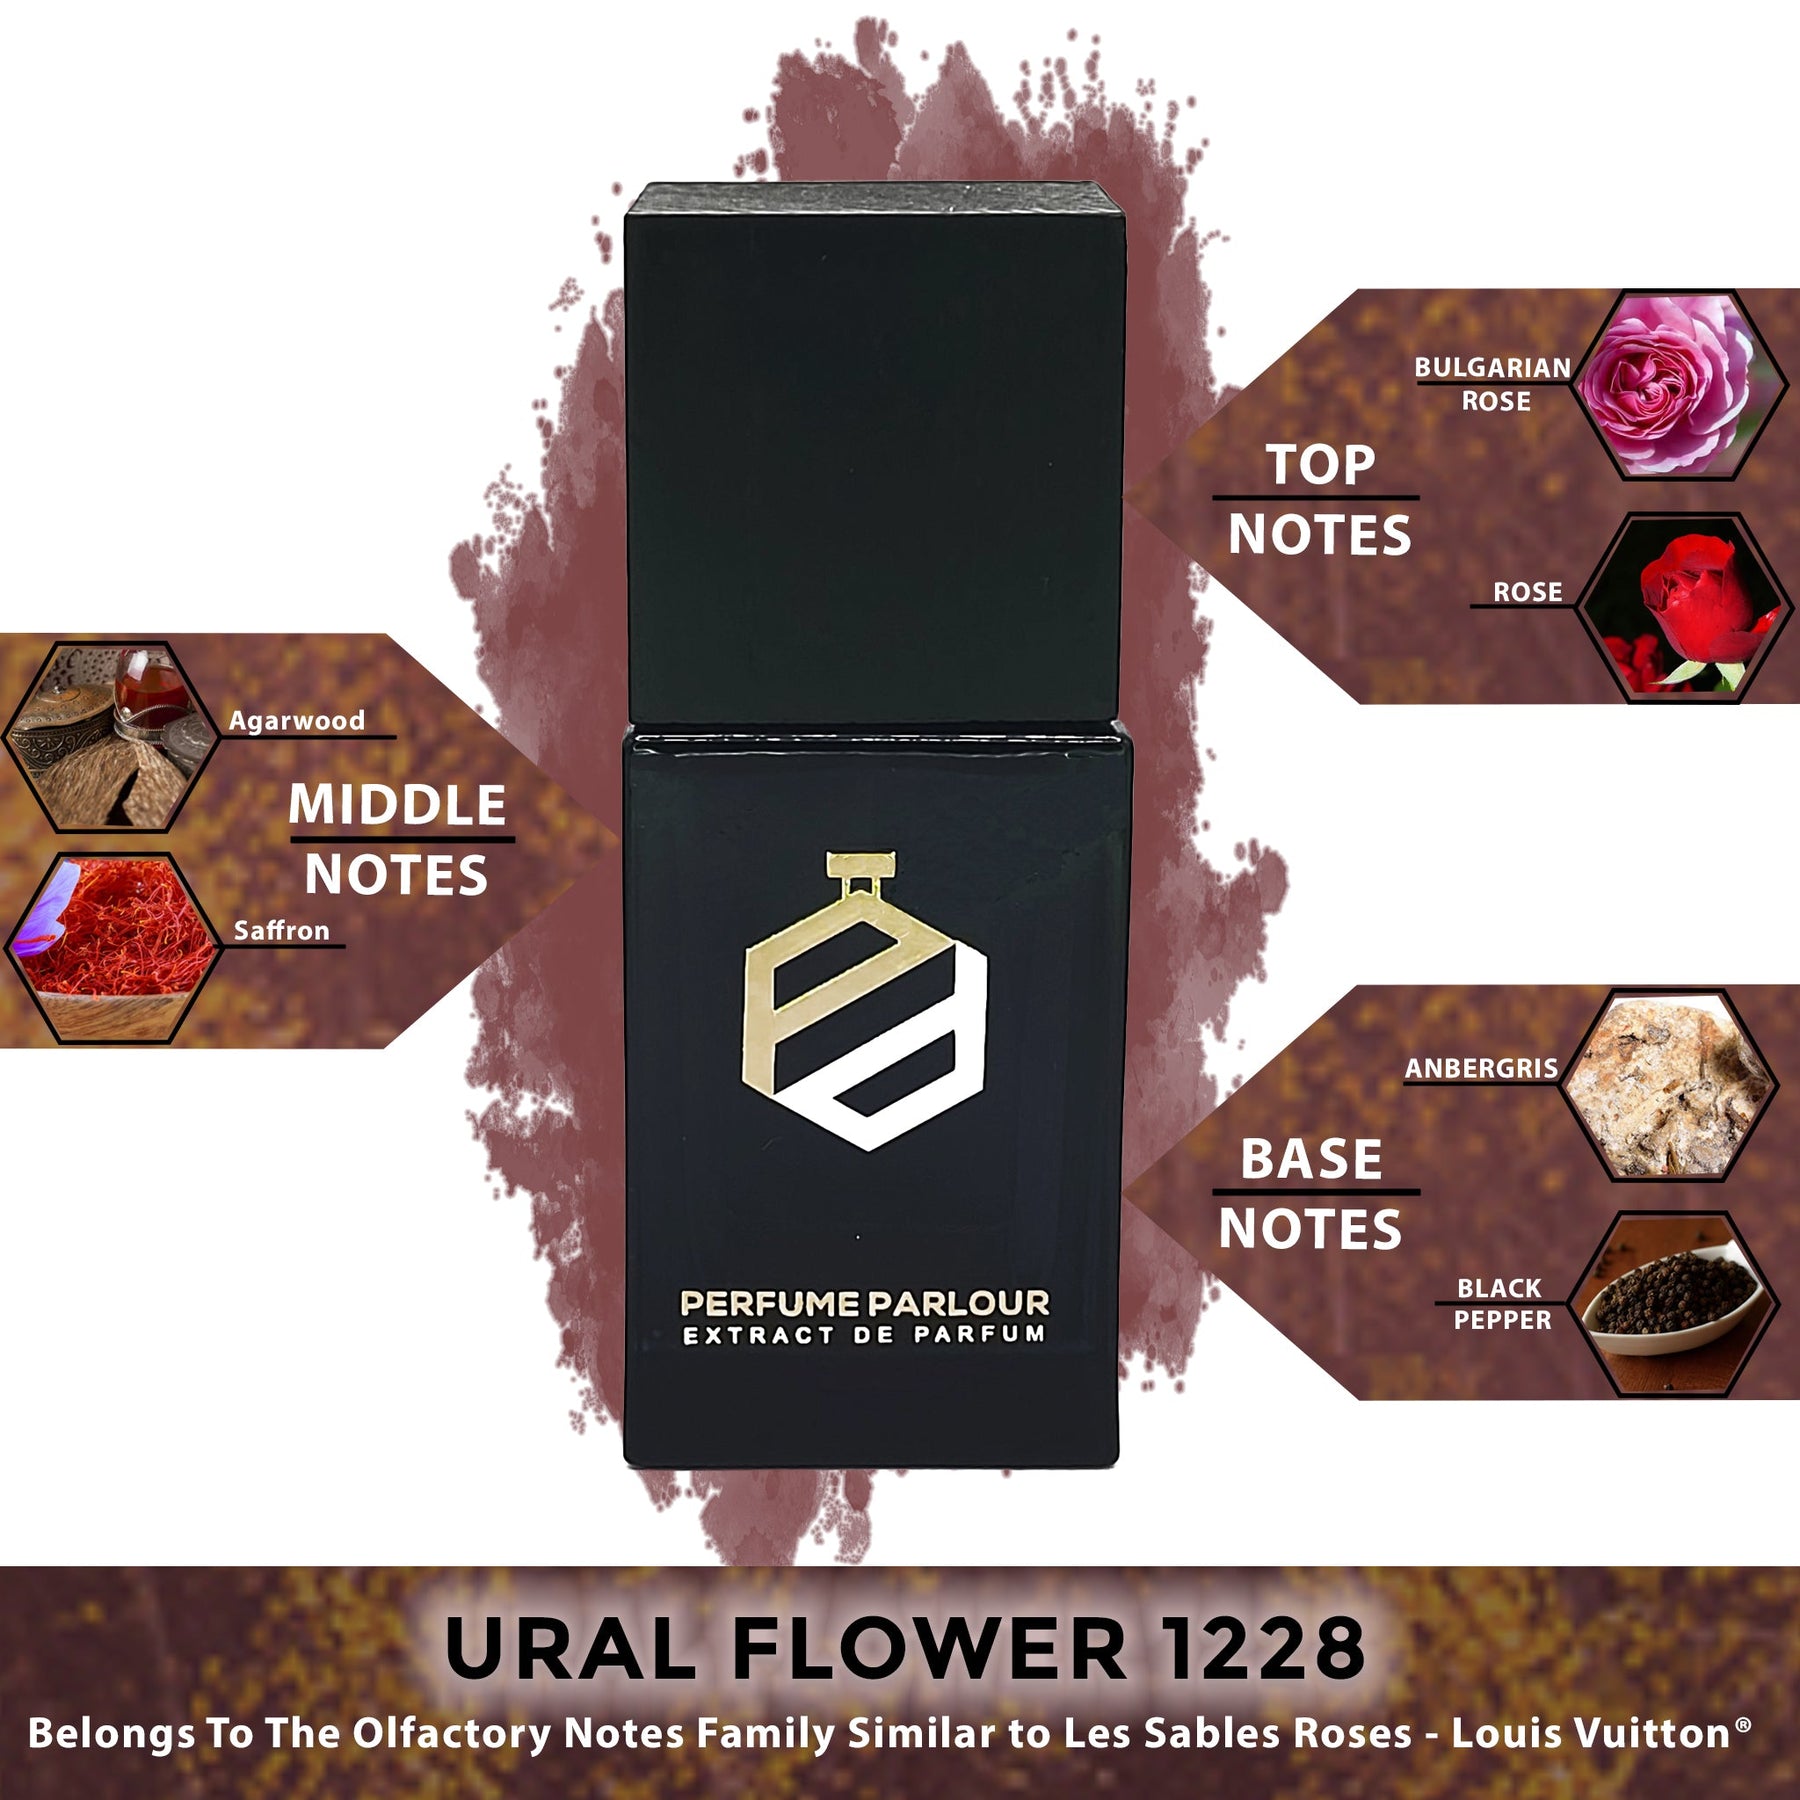 Ural Flower 1228, Les Sables Roses - Louis Vuitton® Dupe